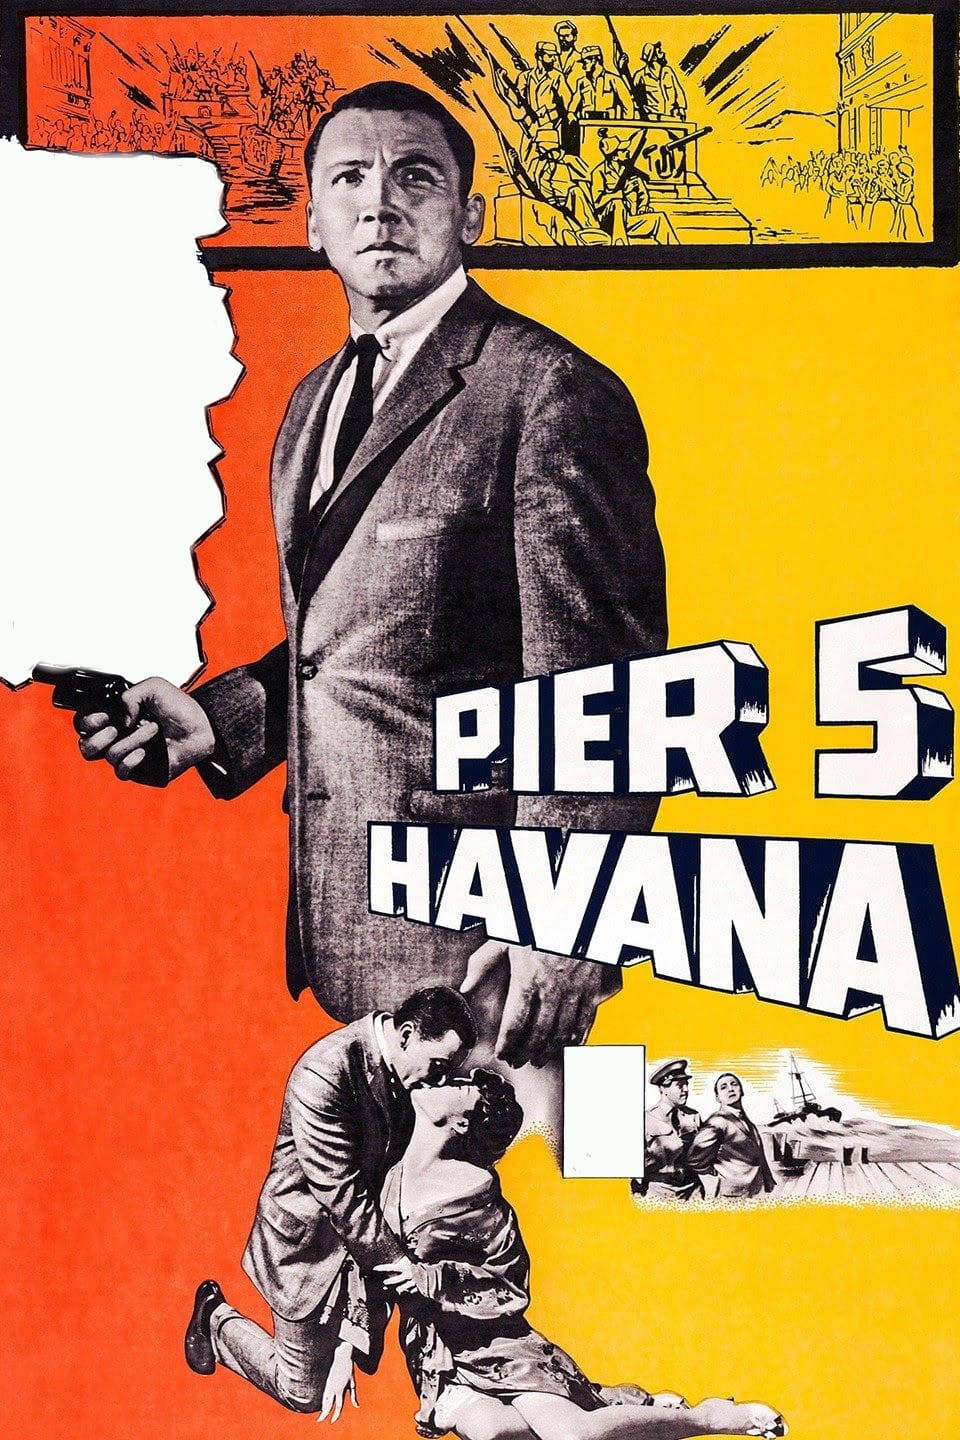 Pier 5, Havana (1959)